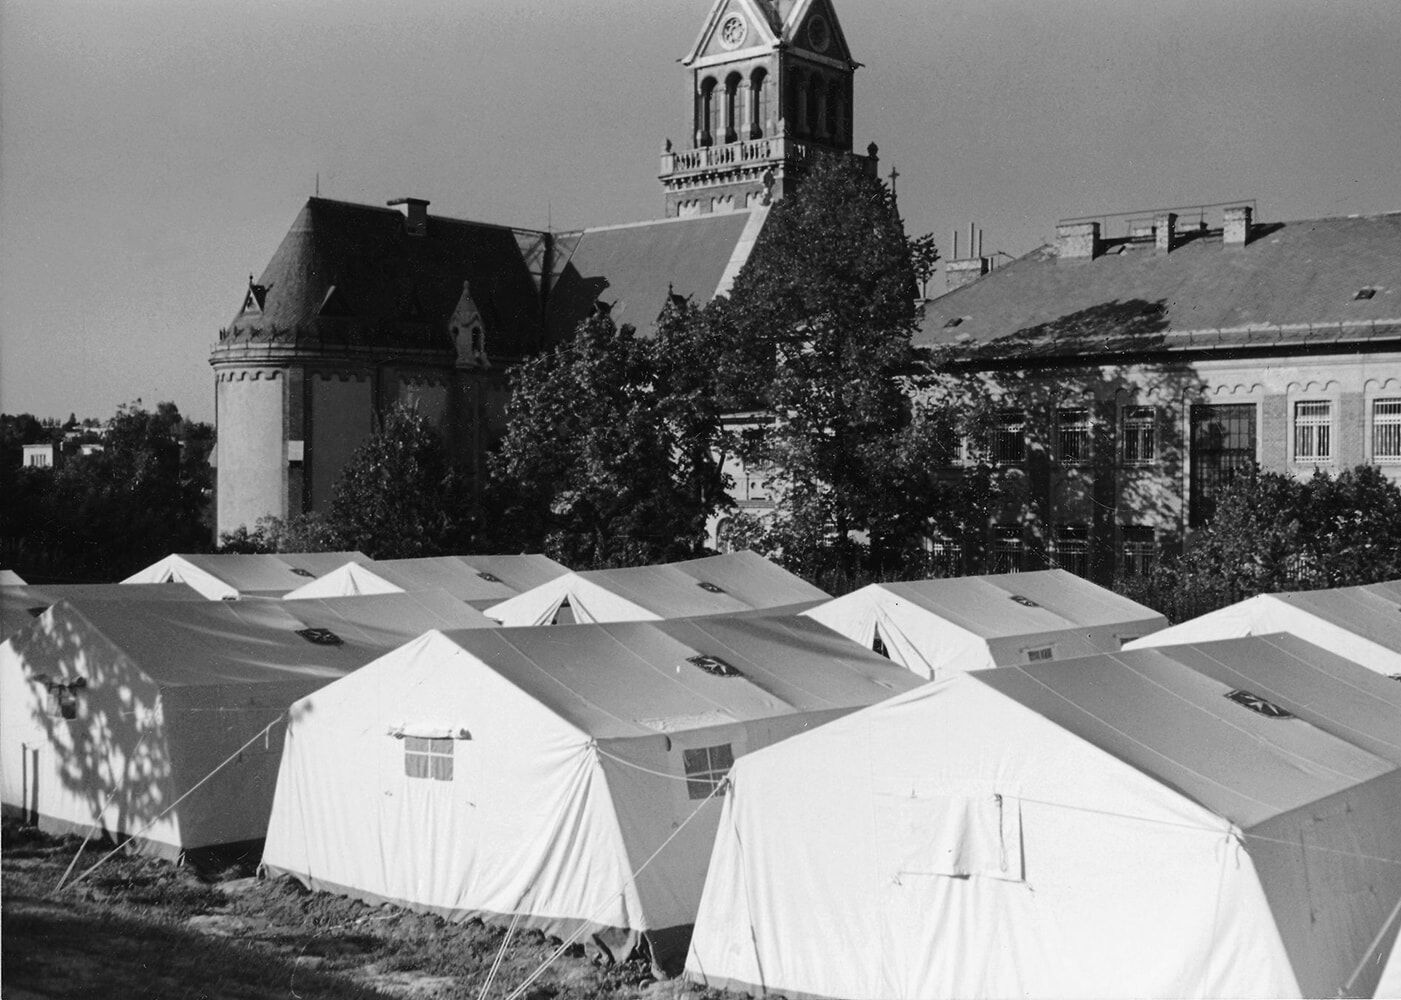 Am 16.8.1989 wird beschlossen, die Hilfen in Budapest auszubauen und ein Zeltlager für die auf dem Gelände der Zugliget-Kirche in Budapest angekommenen ausreisewilligen DDR-Bürger zu schaffen.